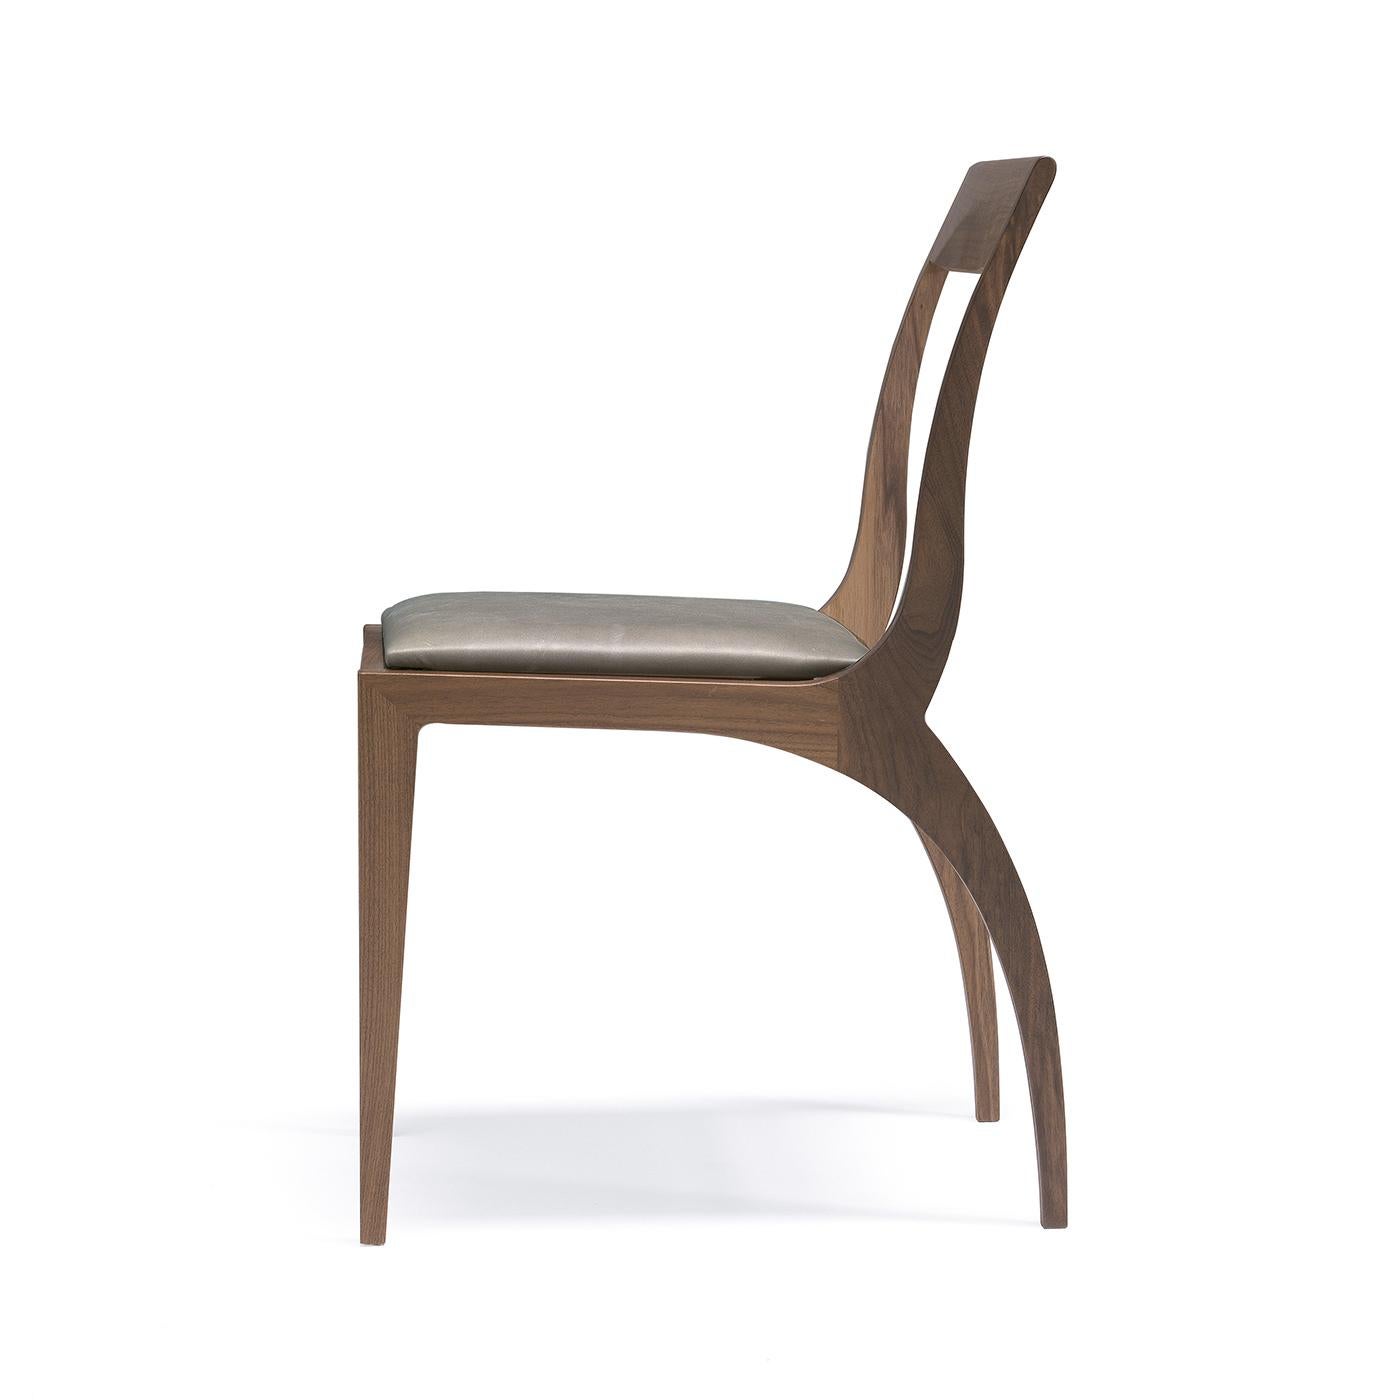 Conçue par l'architecte Fabio Rebosio, cette chaise est une pièce d'appoint sophistiquée qui allie fonctionnalité et qualité très décorative. Sa structure en noyer massif Canaletto est dotée de pieds arrière incurvés qui trouvent un équivalent